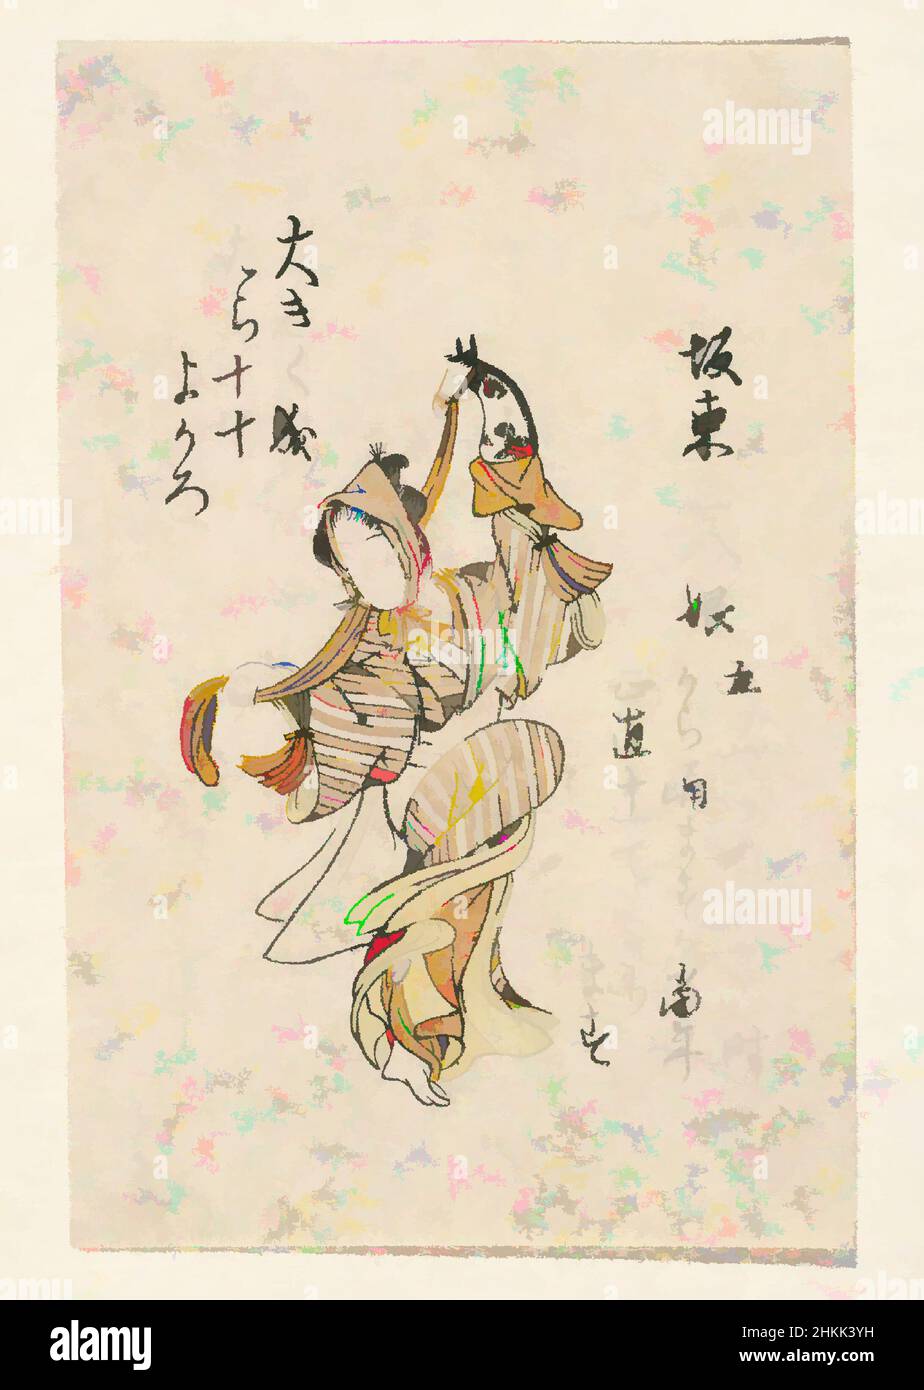 Arte ispirata a Egoyomi, Dancing Girl, stampa legno a colori su carta, Giappone, 18th secolo, periodo Edo, 4 5/16 x 2 13/16 pollici, 10,9 x 7,2 cm, opere classiche modernizzate da Artotop con un tuffo di modernità. Forme, colore e valore, impatto visivo accattivante sulle emozioni artistiche attraverso la libertà delle opere d'arte in modo contemporaneo. Un messaggio senza tempo che persegue una nuova direzione selvaggiamente creativa. Artisti che si rivolgono al supporto digitale e creano l'NFT Artotop Foto Stock